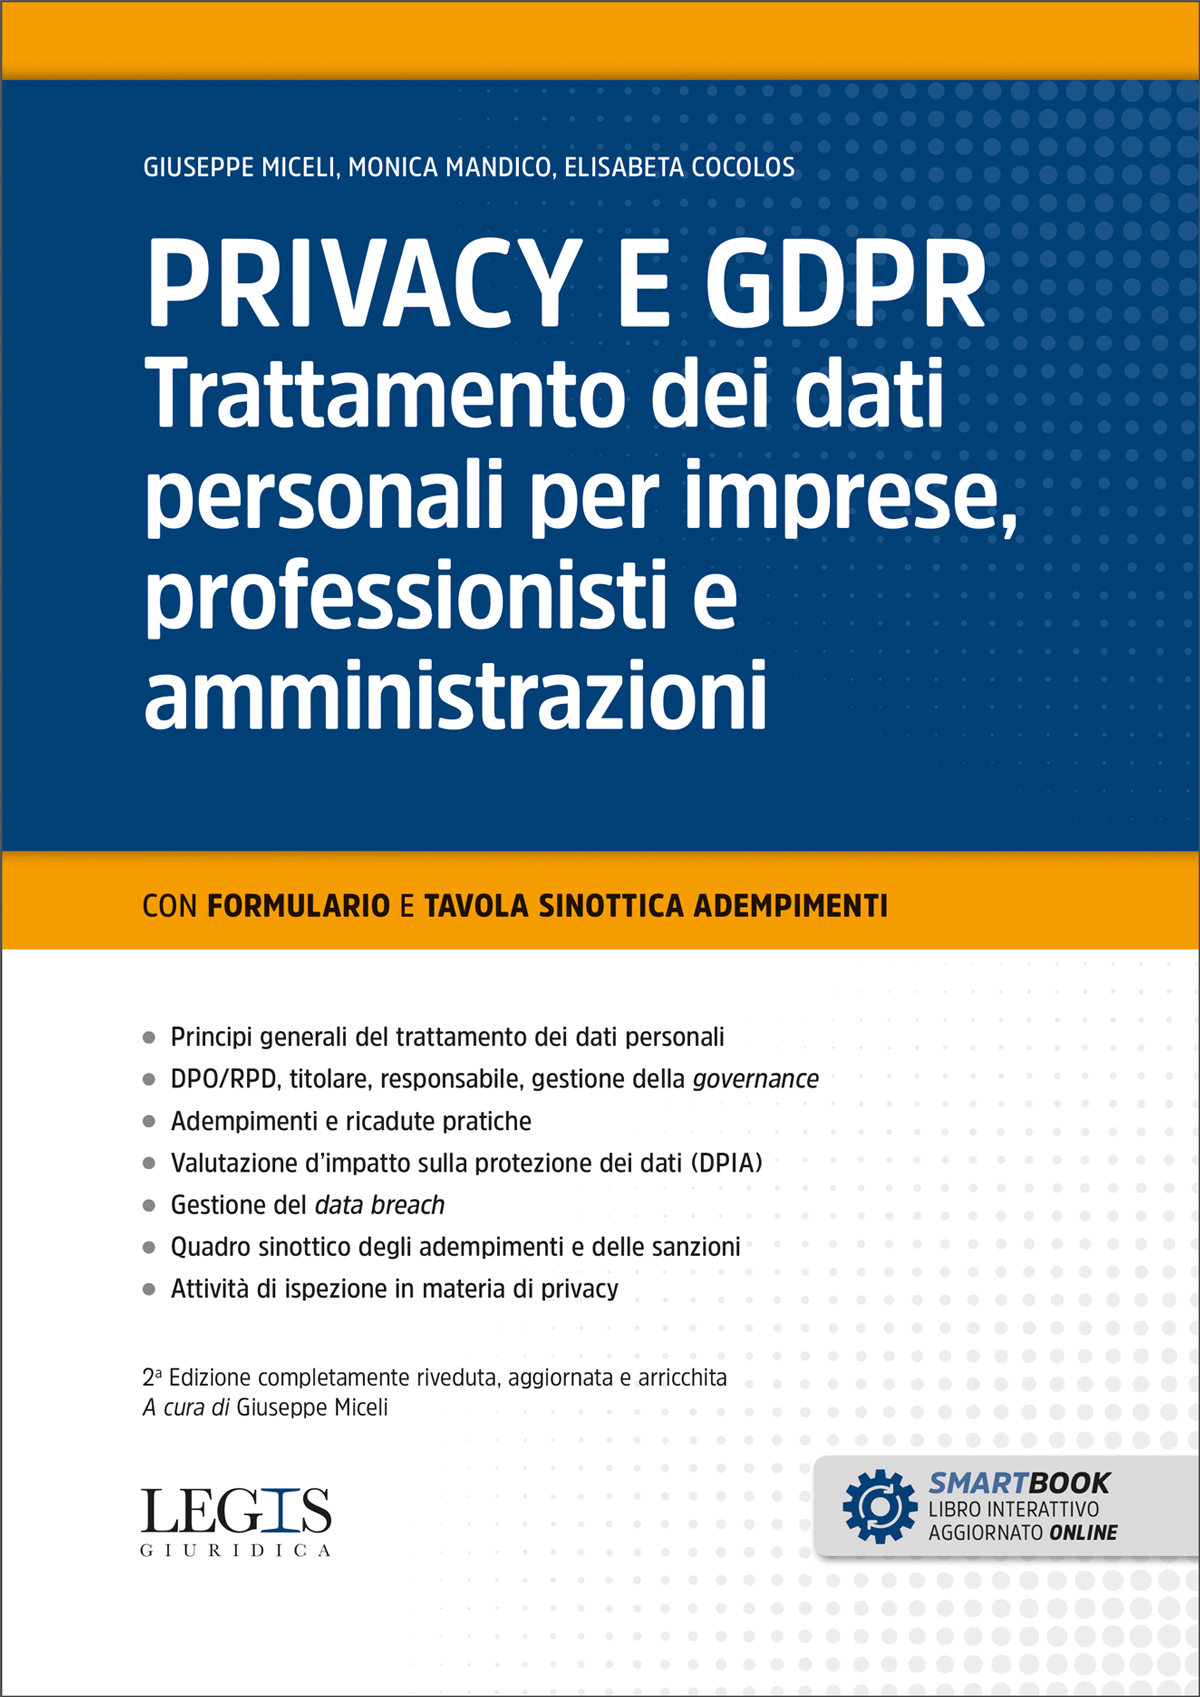 PRIVACY E GDPR – Trattamento dei dati personali per imprese, professionisti e amministrazioni